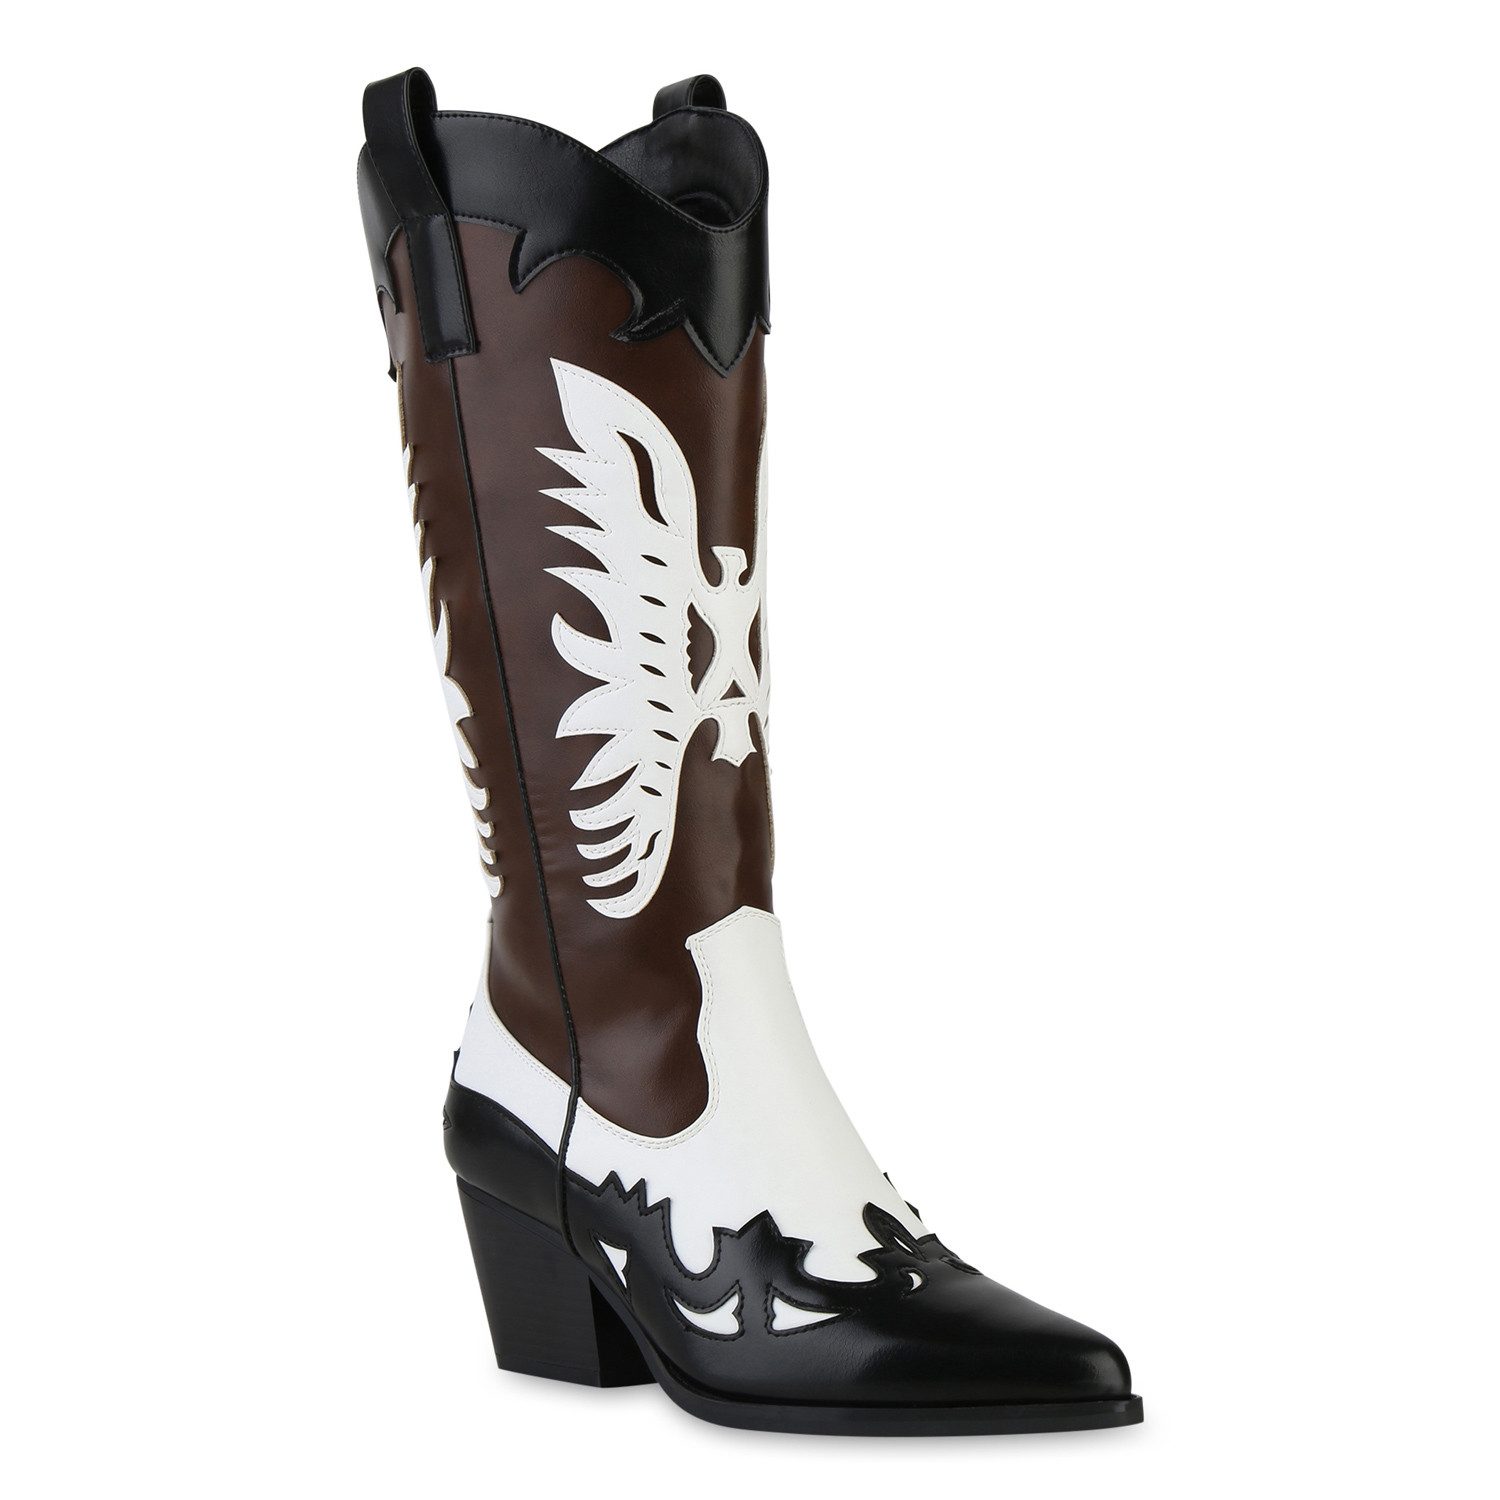 VAN HILL 841120 Cowboy Boots Schuhe